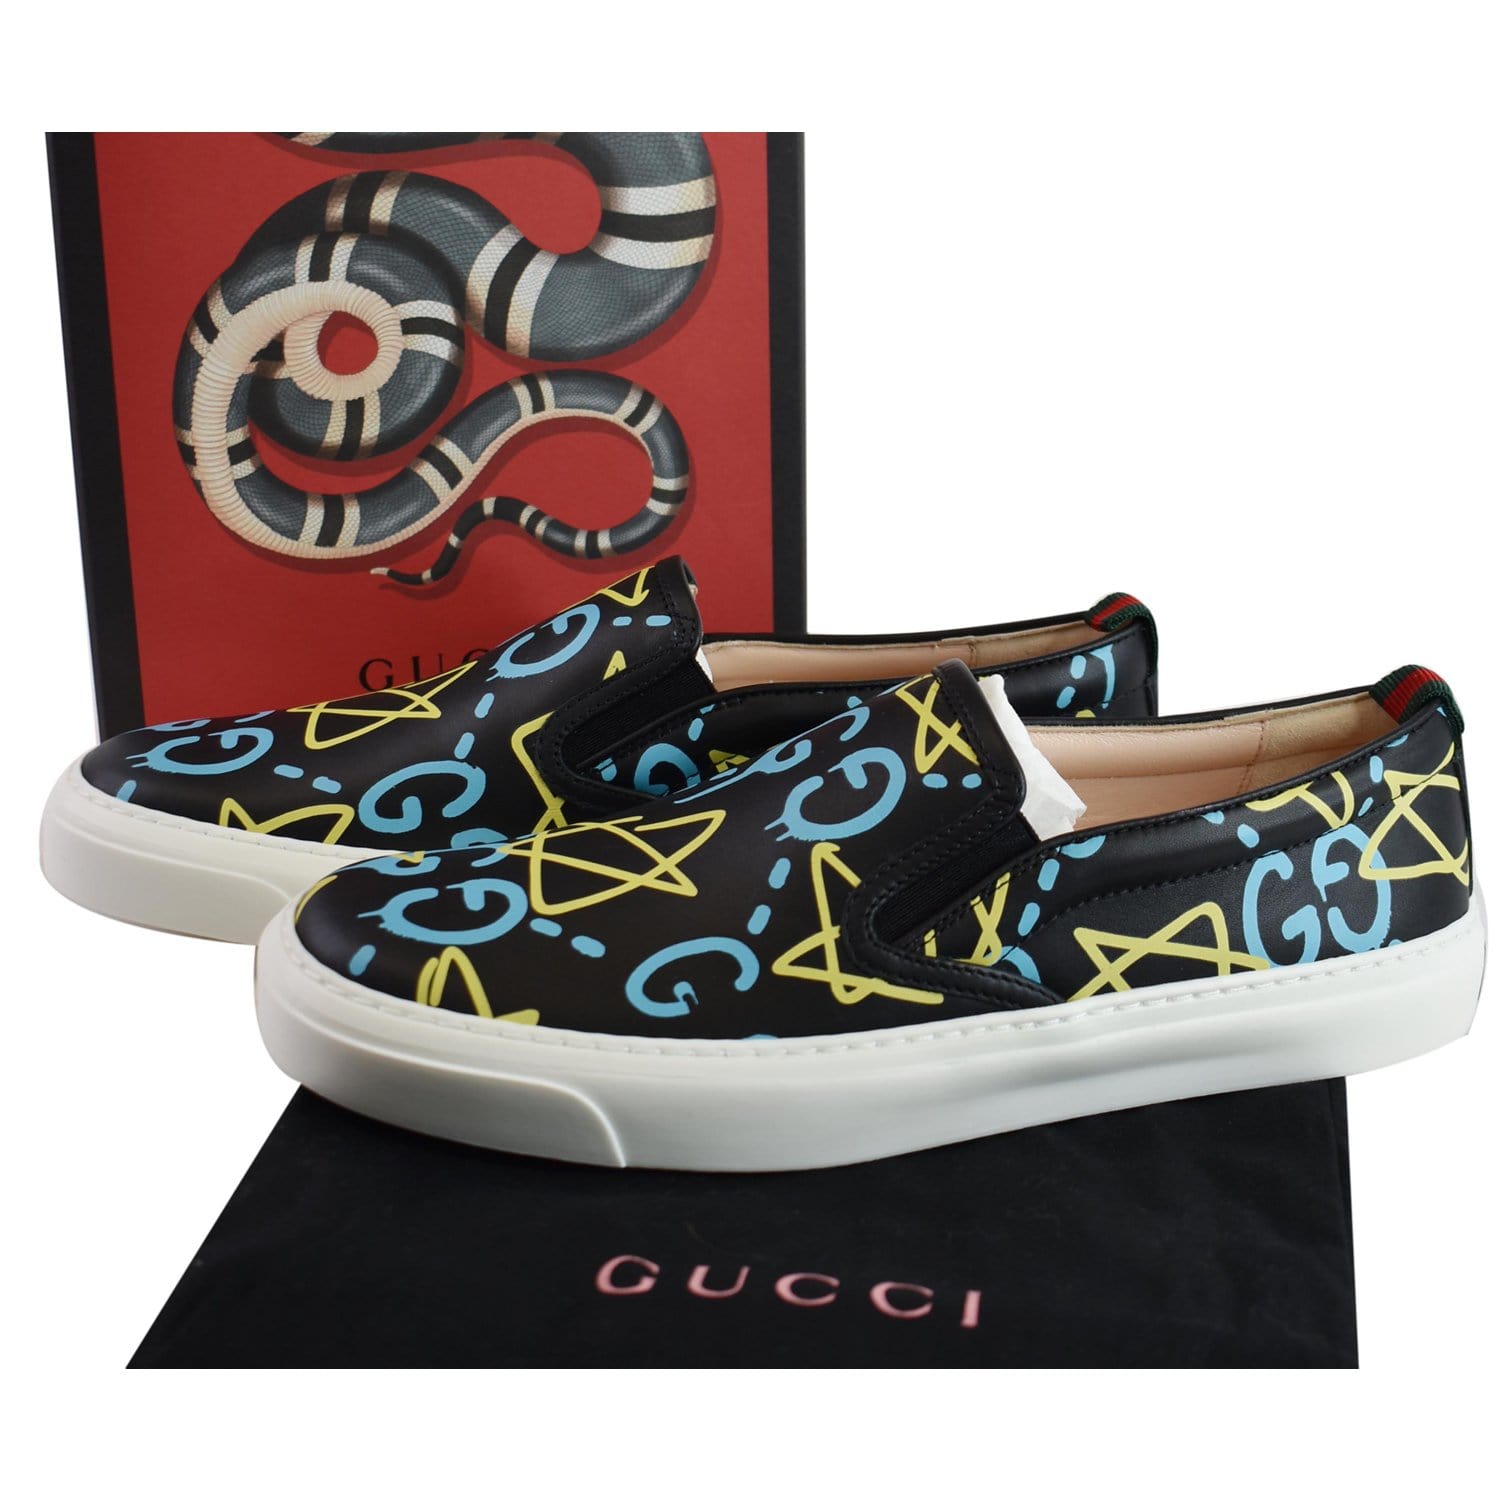 Gucci Black Guccissima Leather Slip On Sneakers Size 44 Gucci